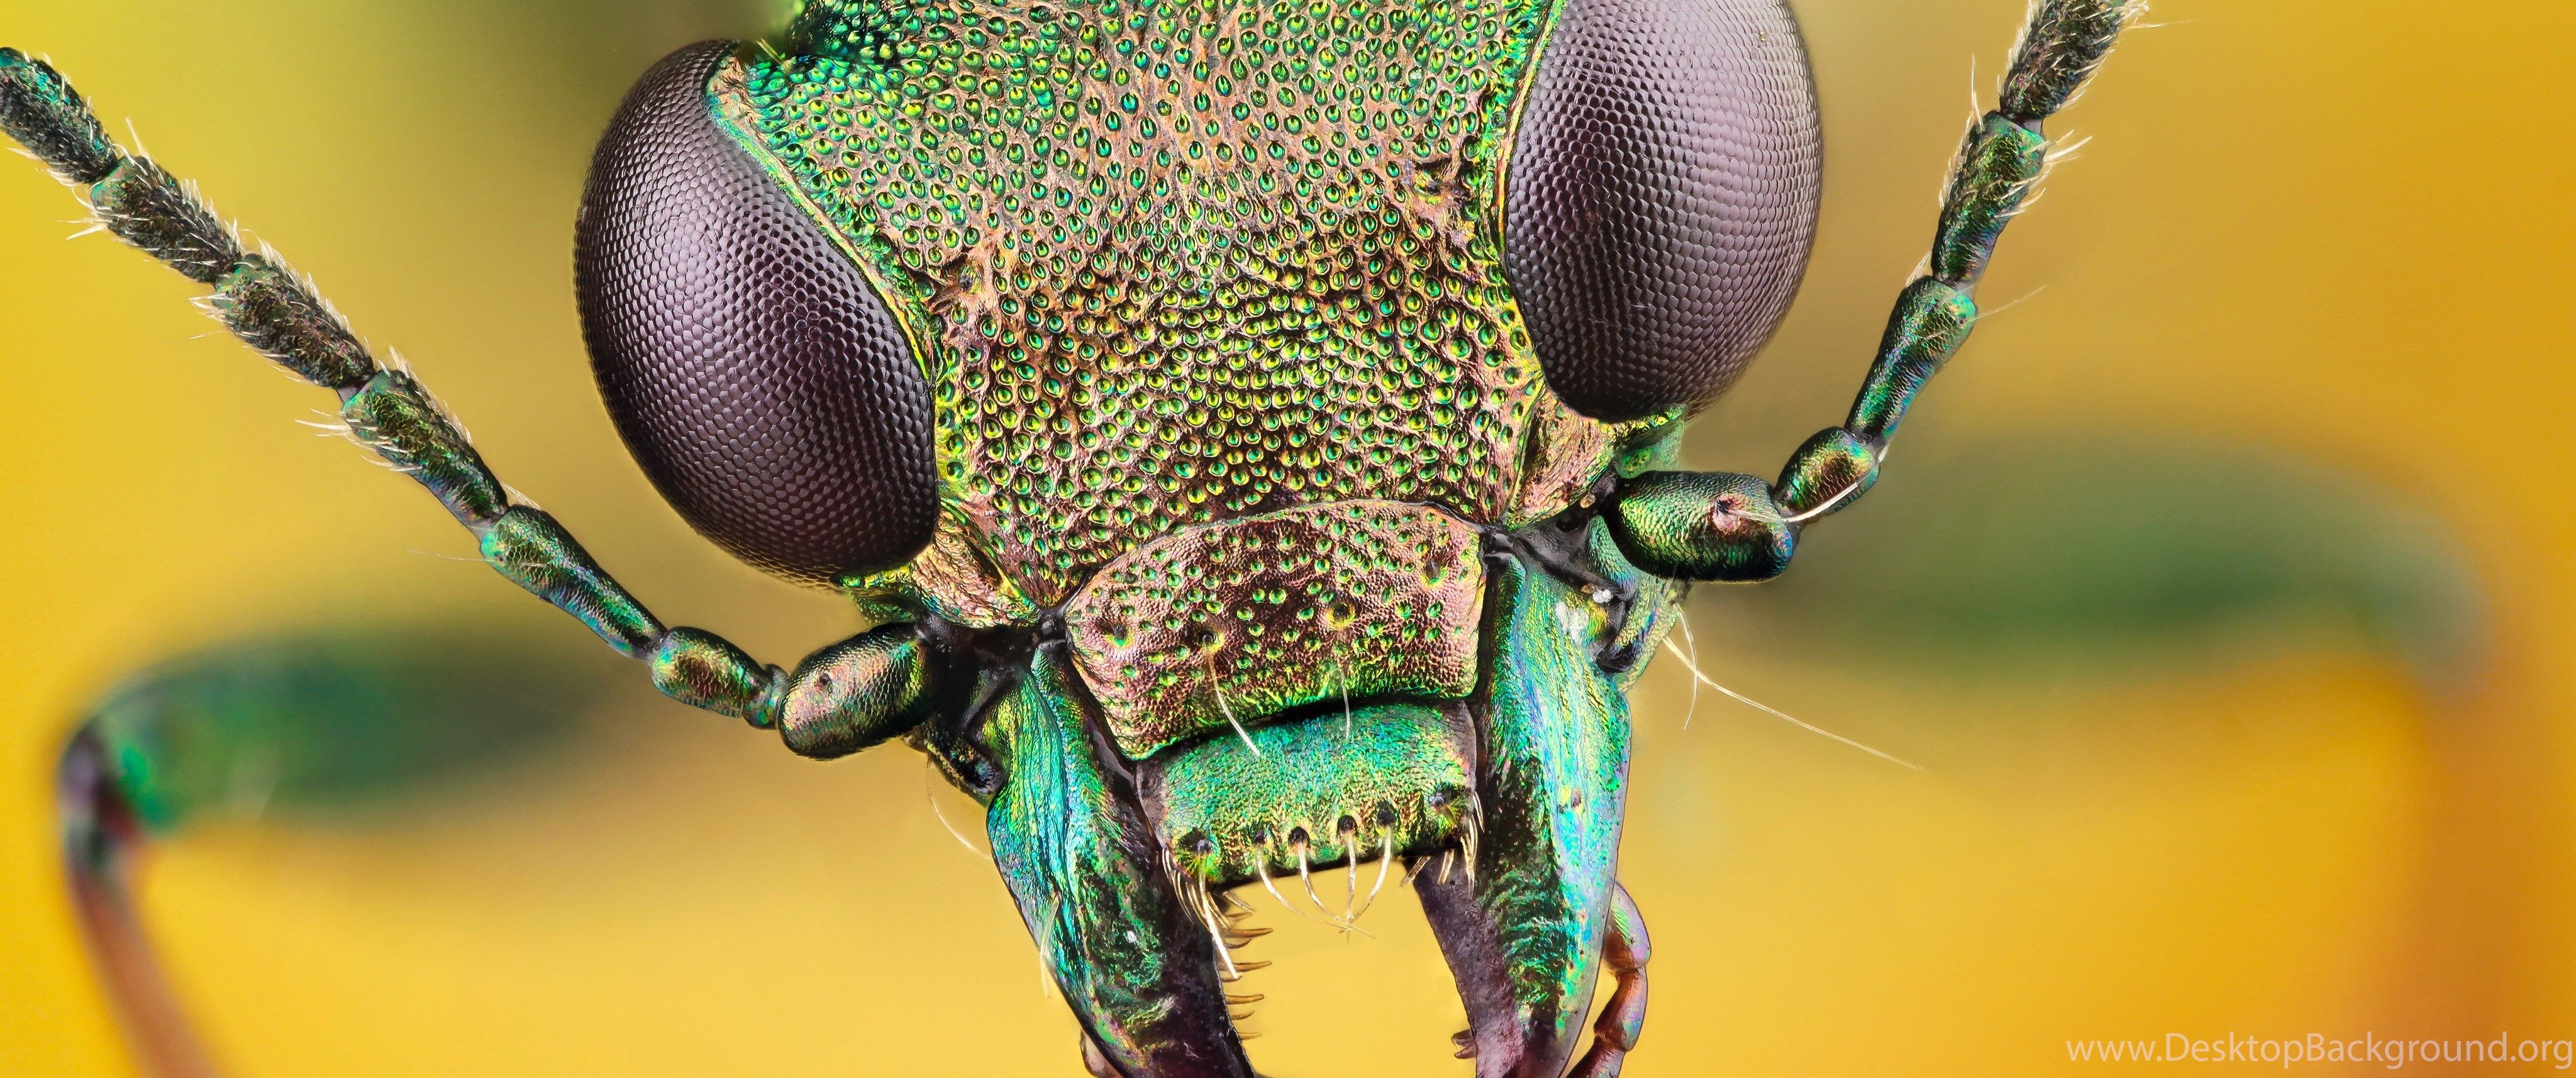 Free Creatures Wallpaper, Animals HD Desktop Wallpaper, Insects. Desktop Background